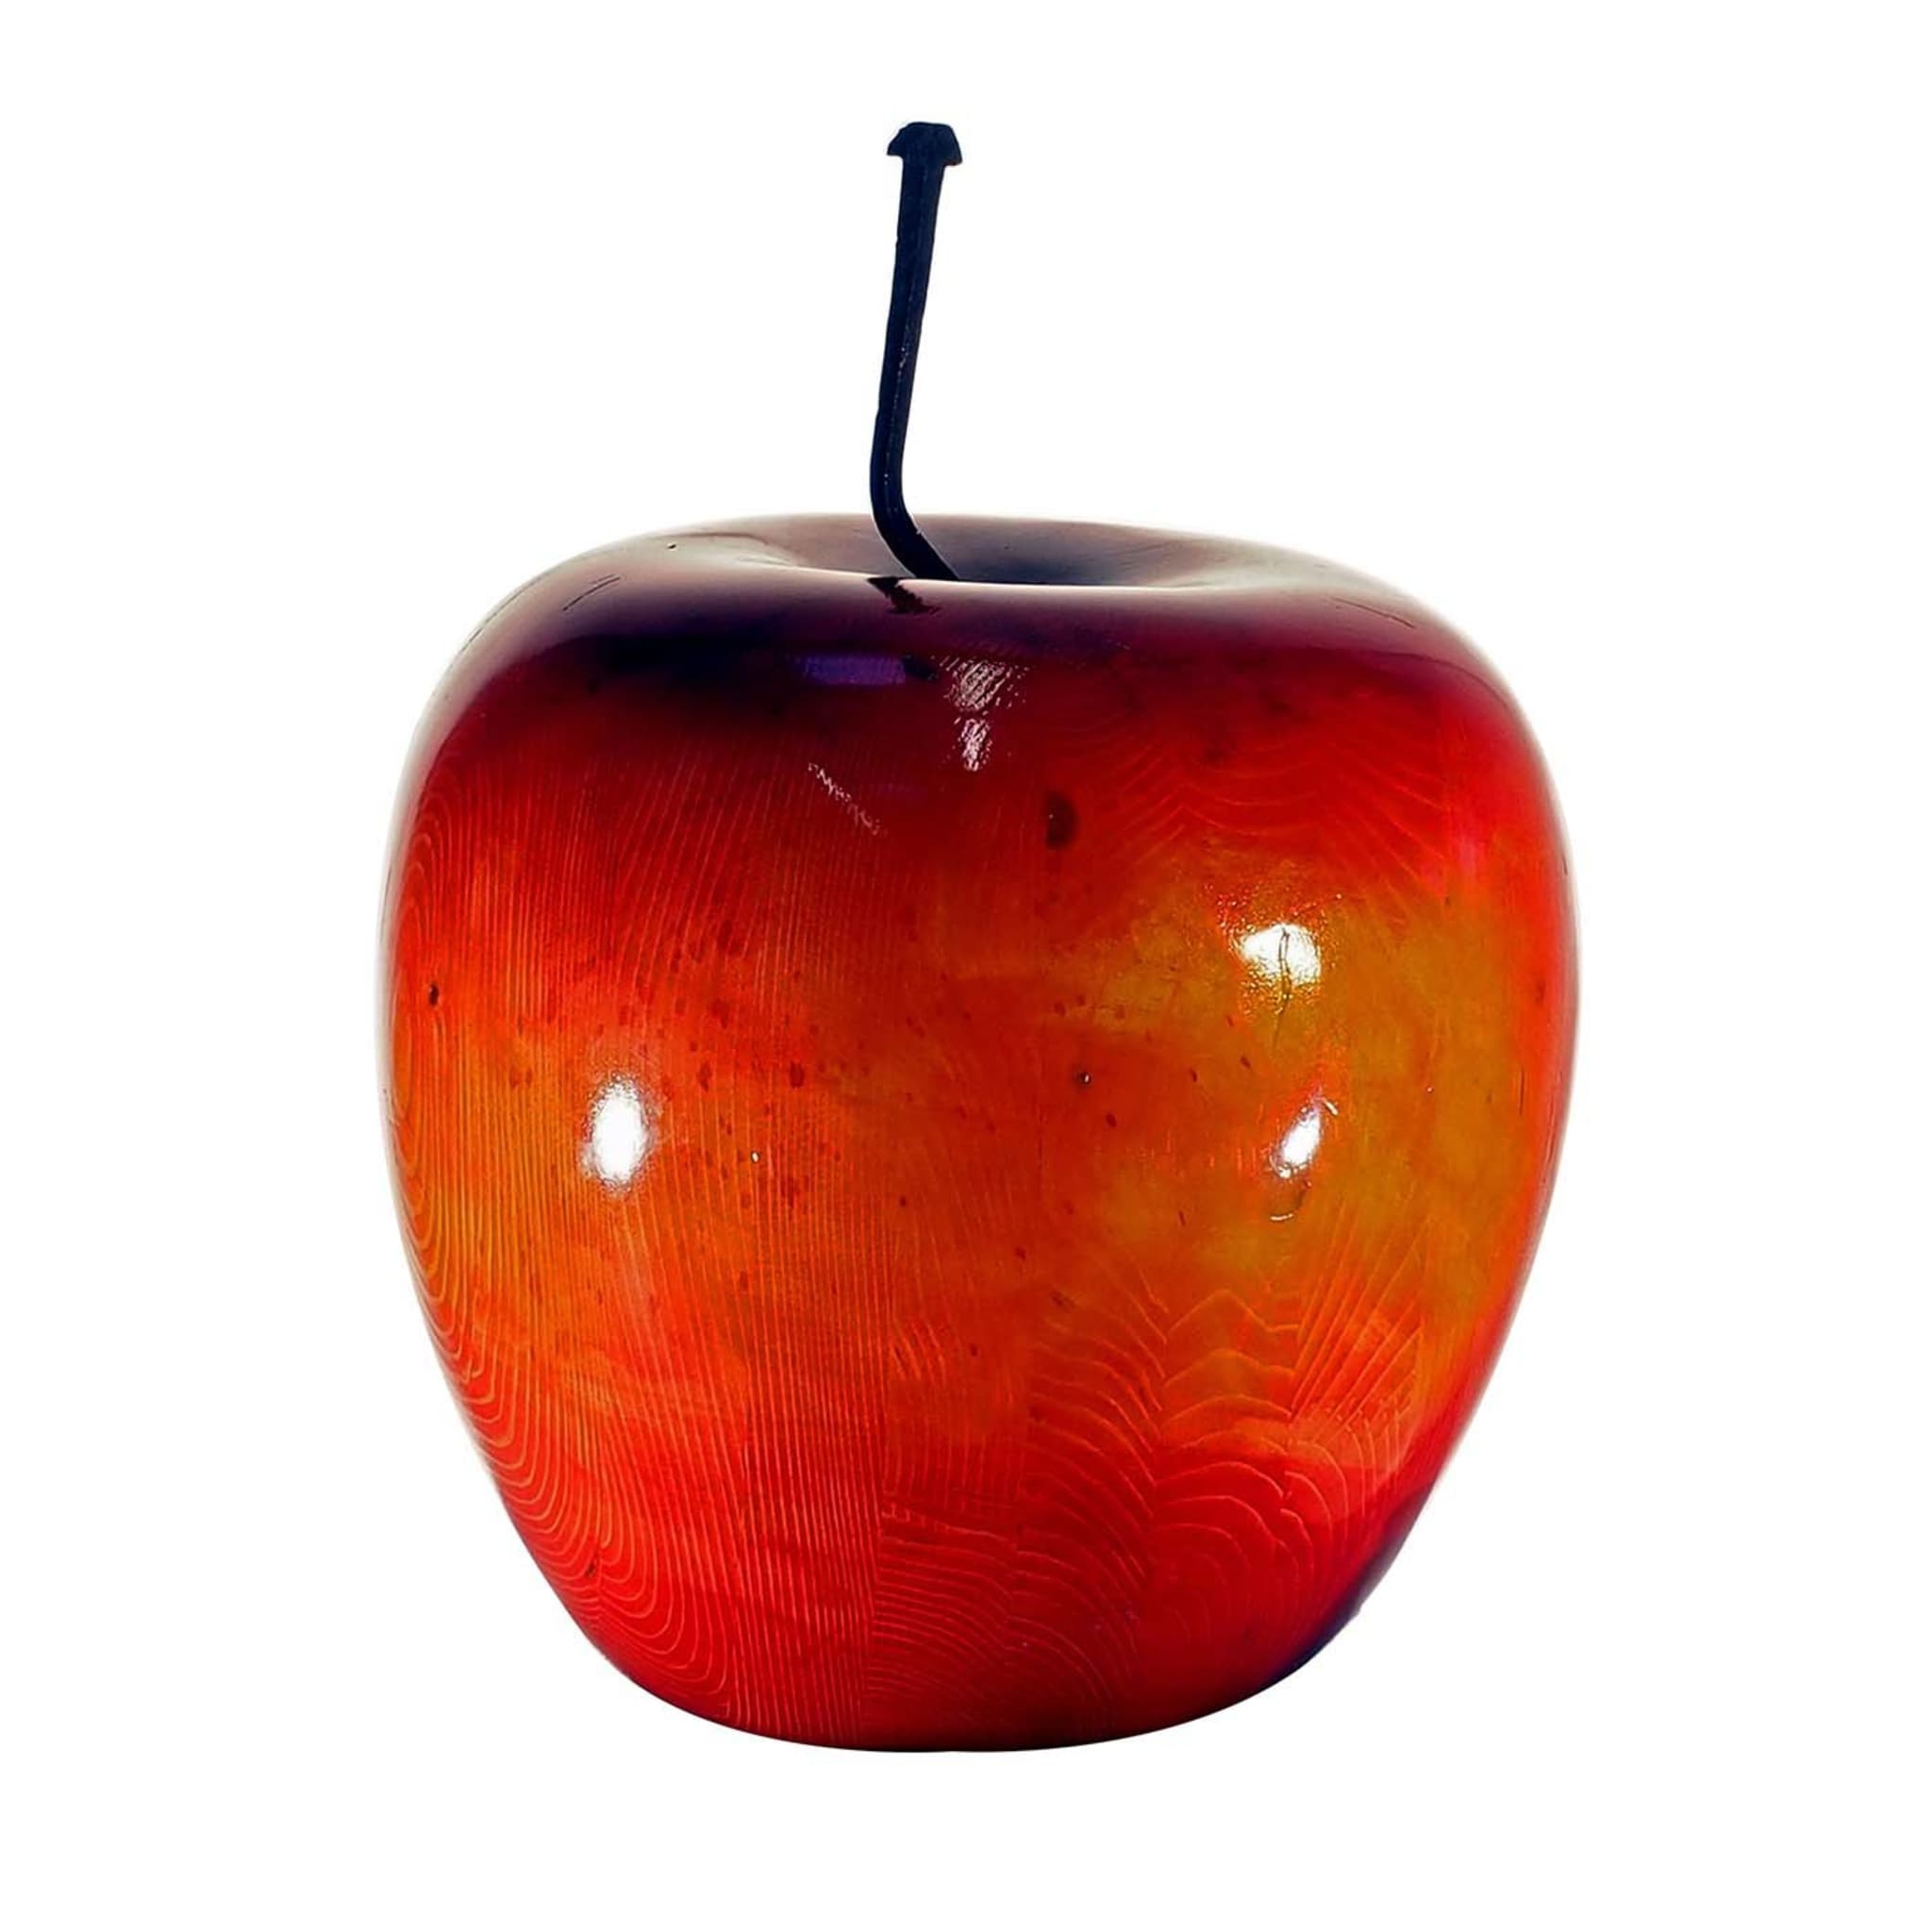 Manzana roja brillante - Vista principal